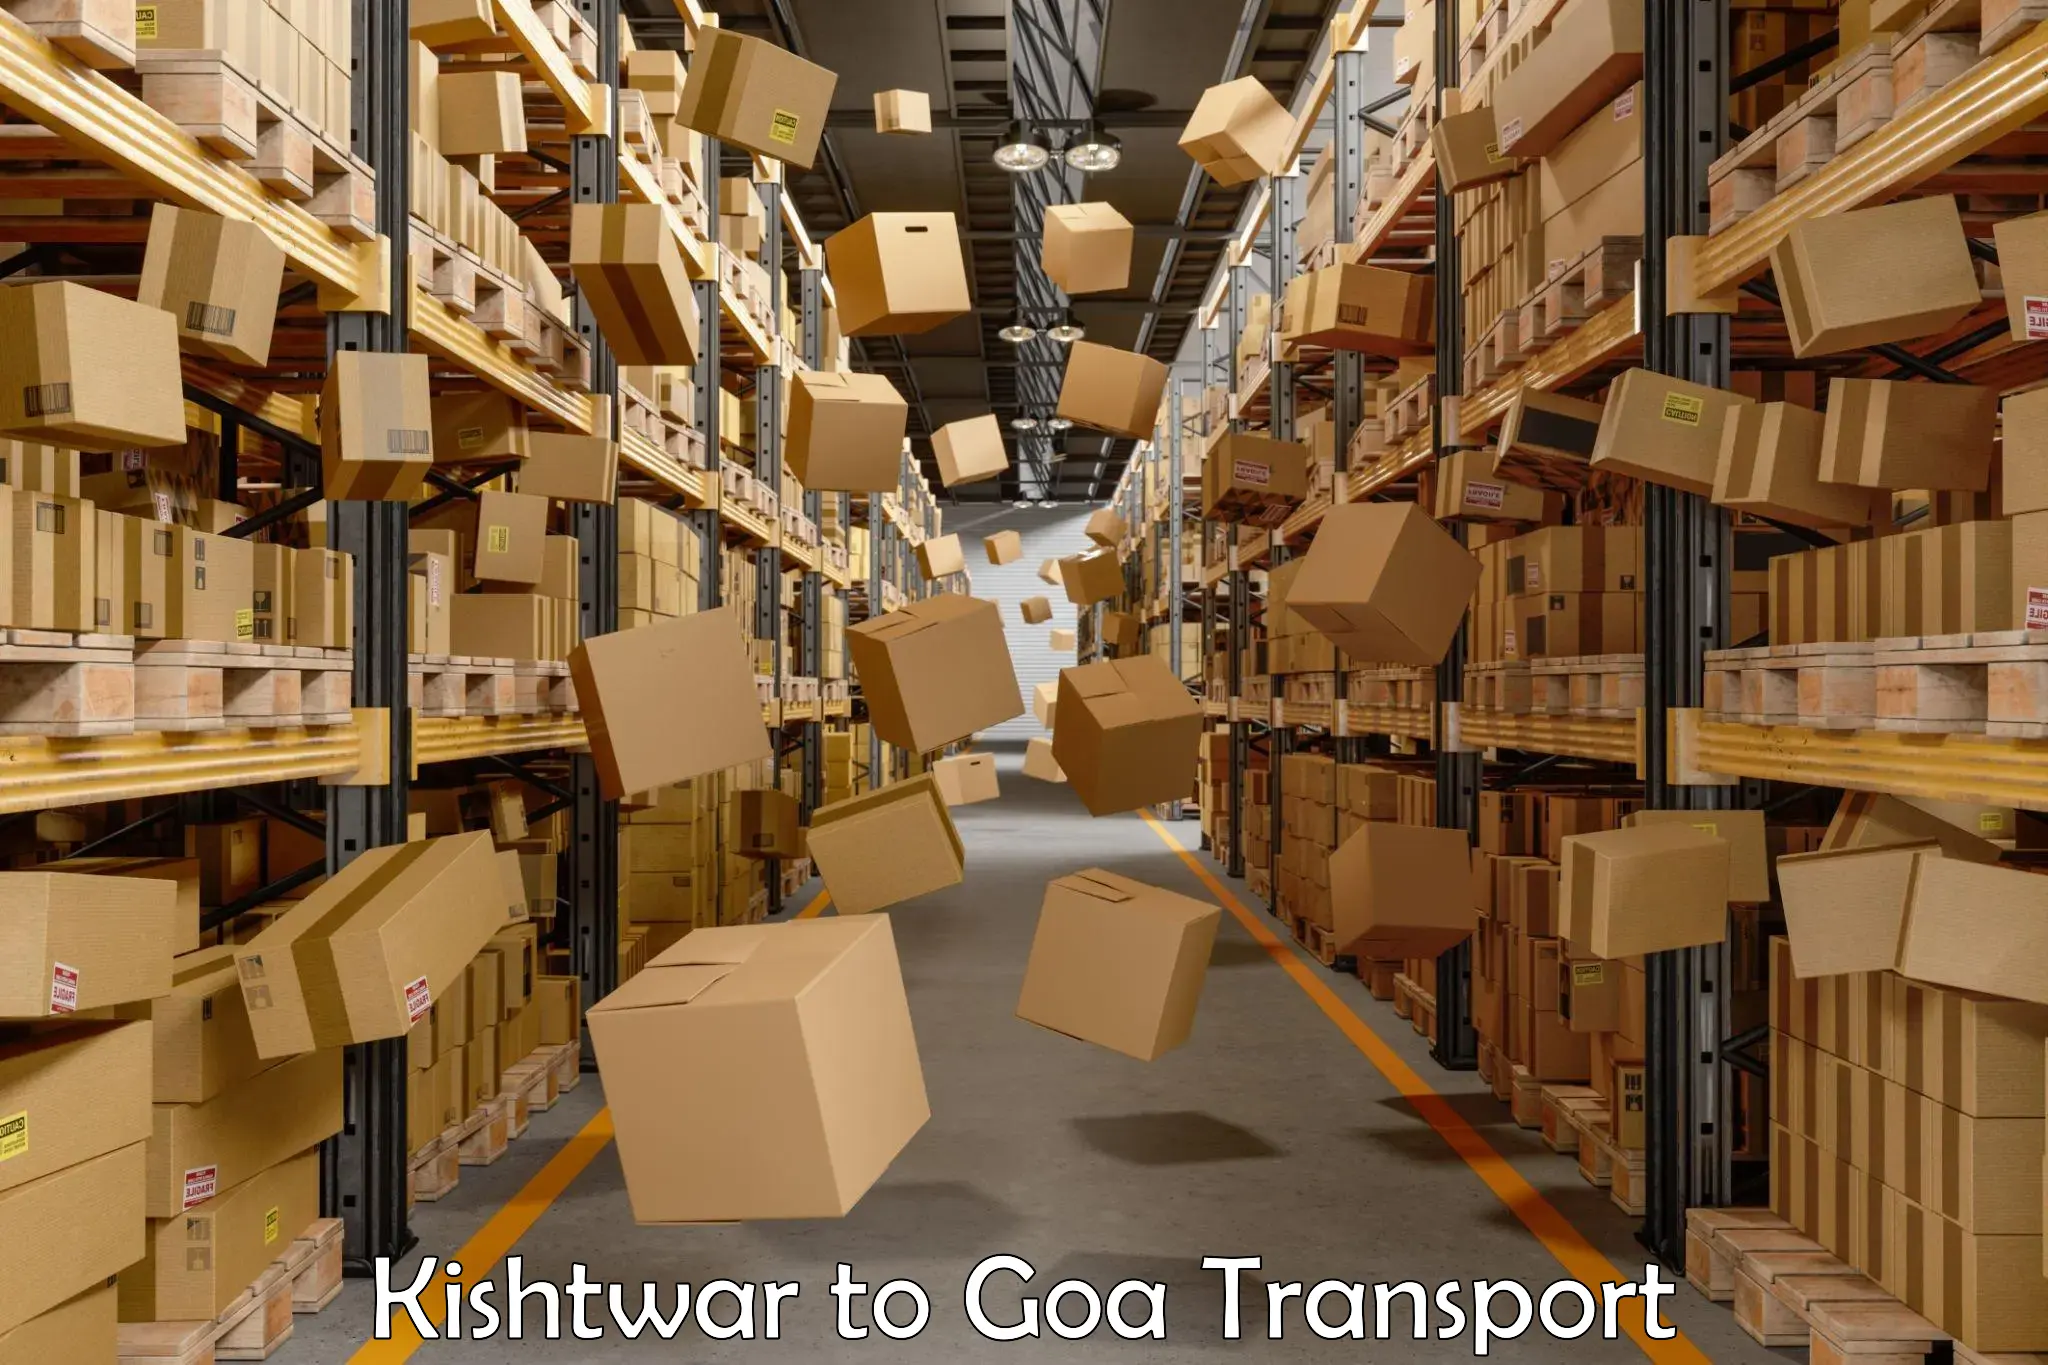 Daily parcel service transport Kishtwar to Canacona